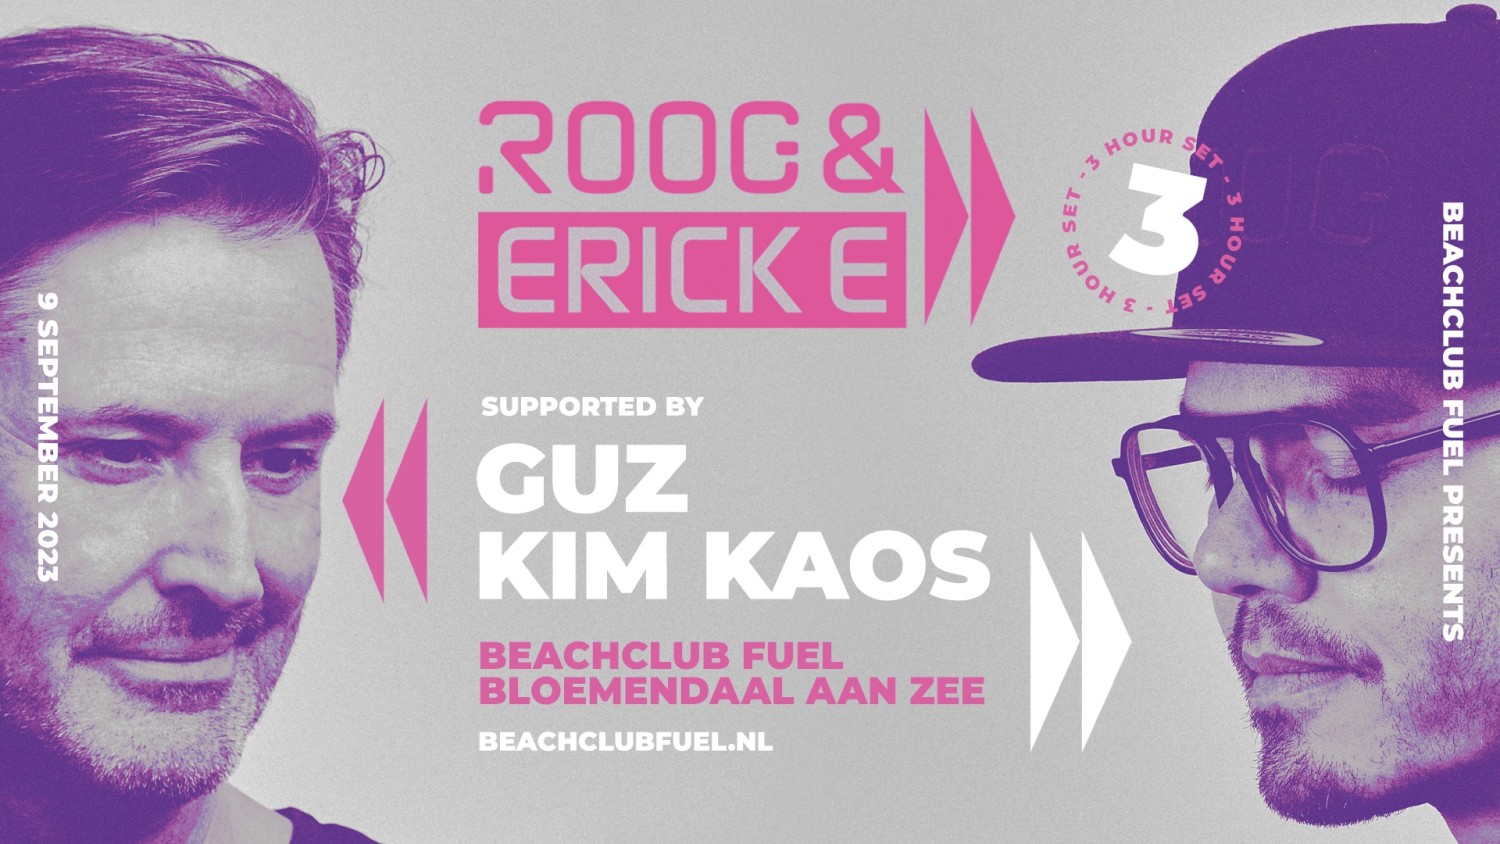 Party nieuws: Nieuwe editie Beachclub Fuel presents ROOG & Erick E